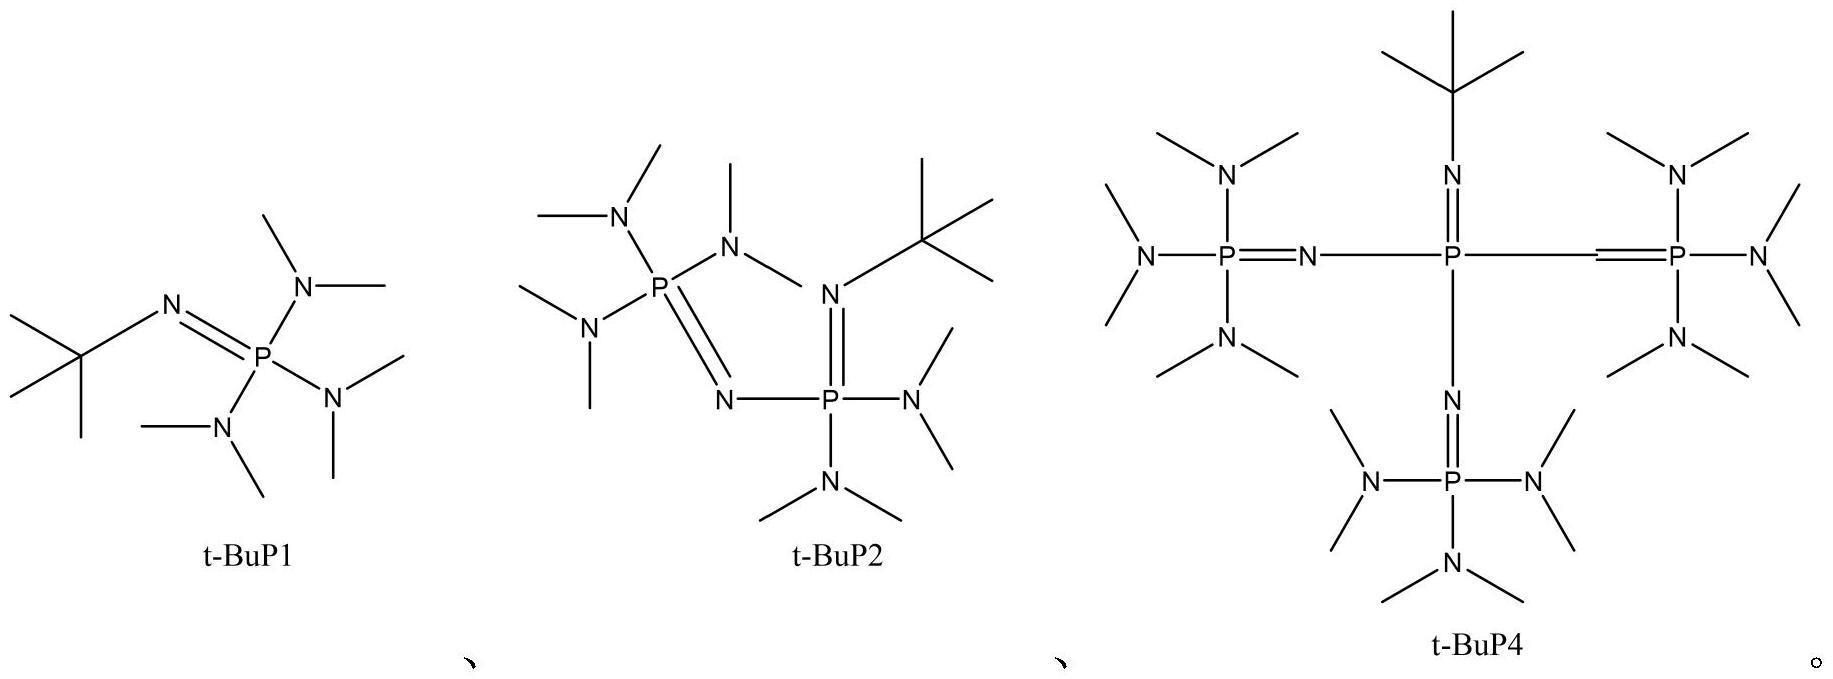 一种磷腈碱体系催化降解聚碳酸酯的方法